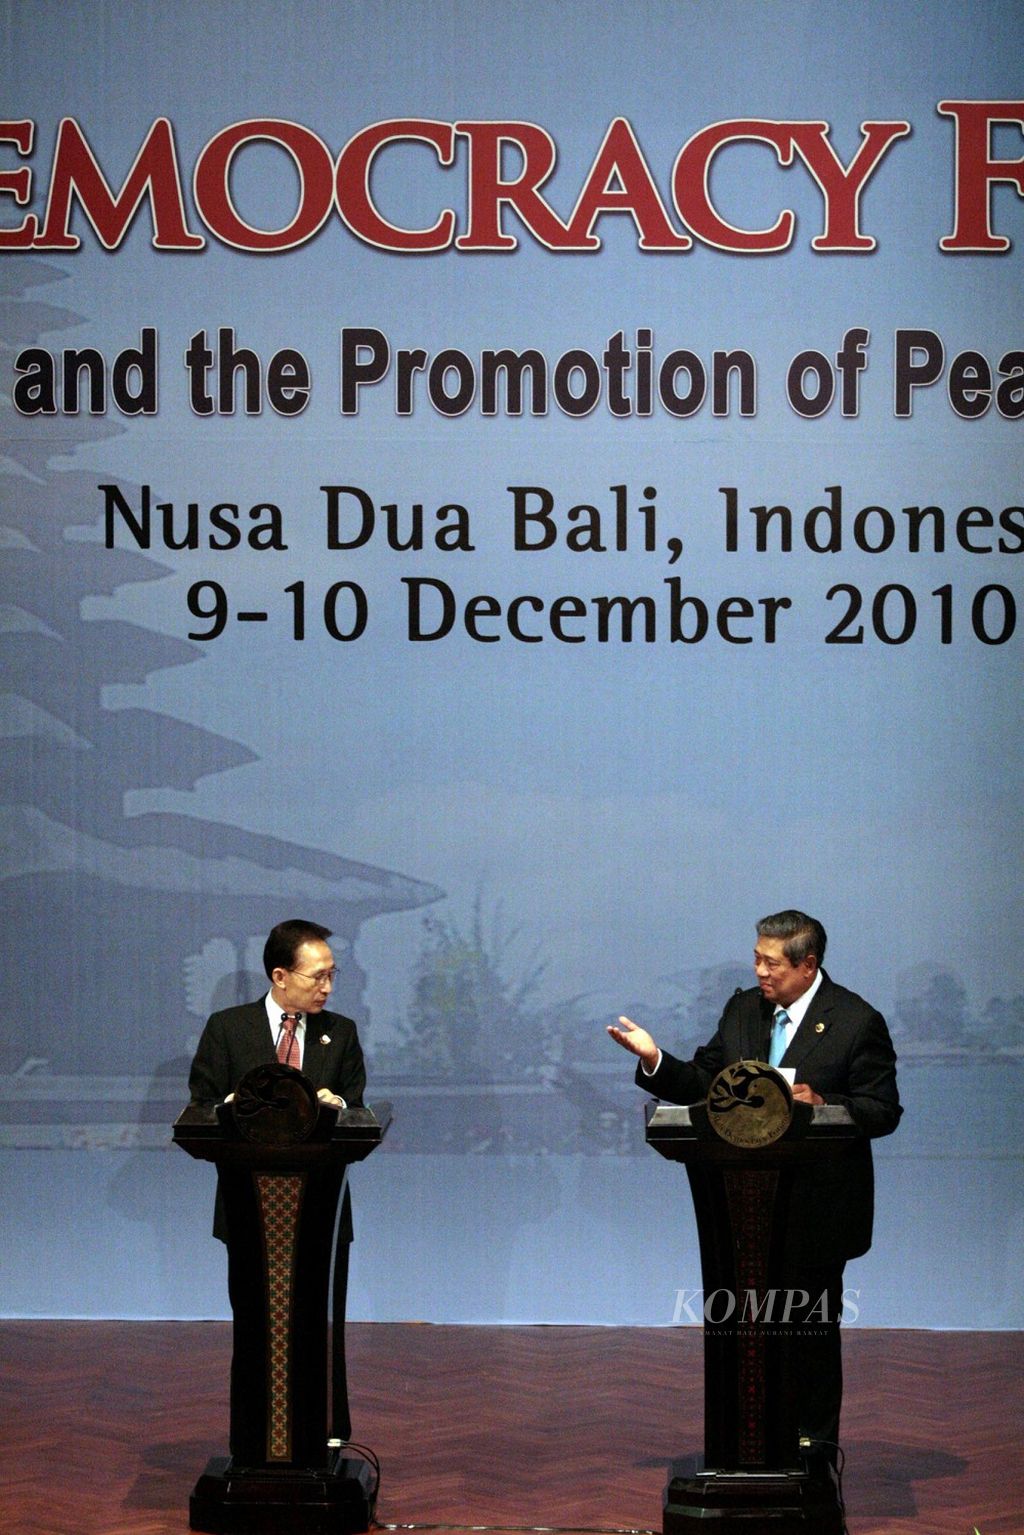 Presiden Susilo Bambang Yudhoyono dan Presiden Korea Selatan Lee Myung-bak mengeluarkan pernyataan bersama di sela-sela Bali Democracy Forum III di Nusa Dua, Bali, Kamis (9/12/2010). Di forum itu, kedua negara bertindak sebagai ketua bersama. Secara bilateral, kedua negara sepakat meningkatkan kerja sama di bidang ekonomi, khususnya di bidang investasi dan perdagangan.